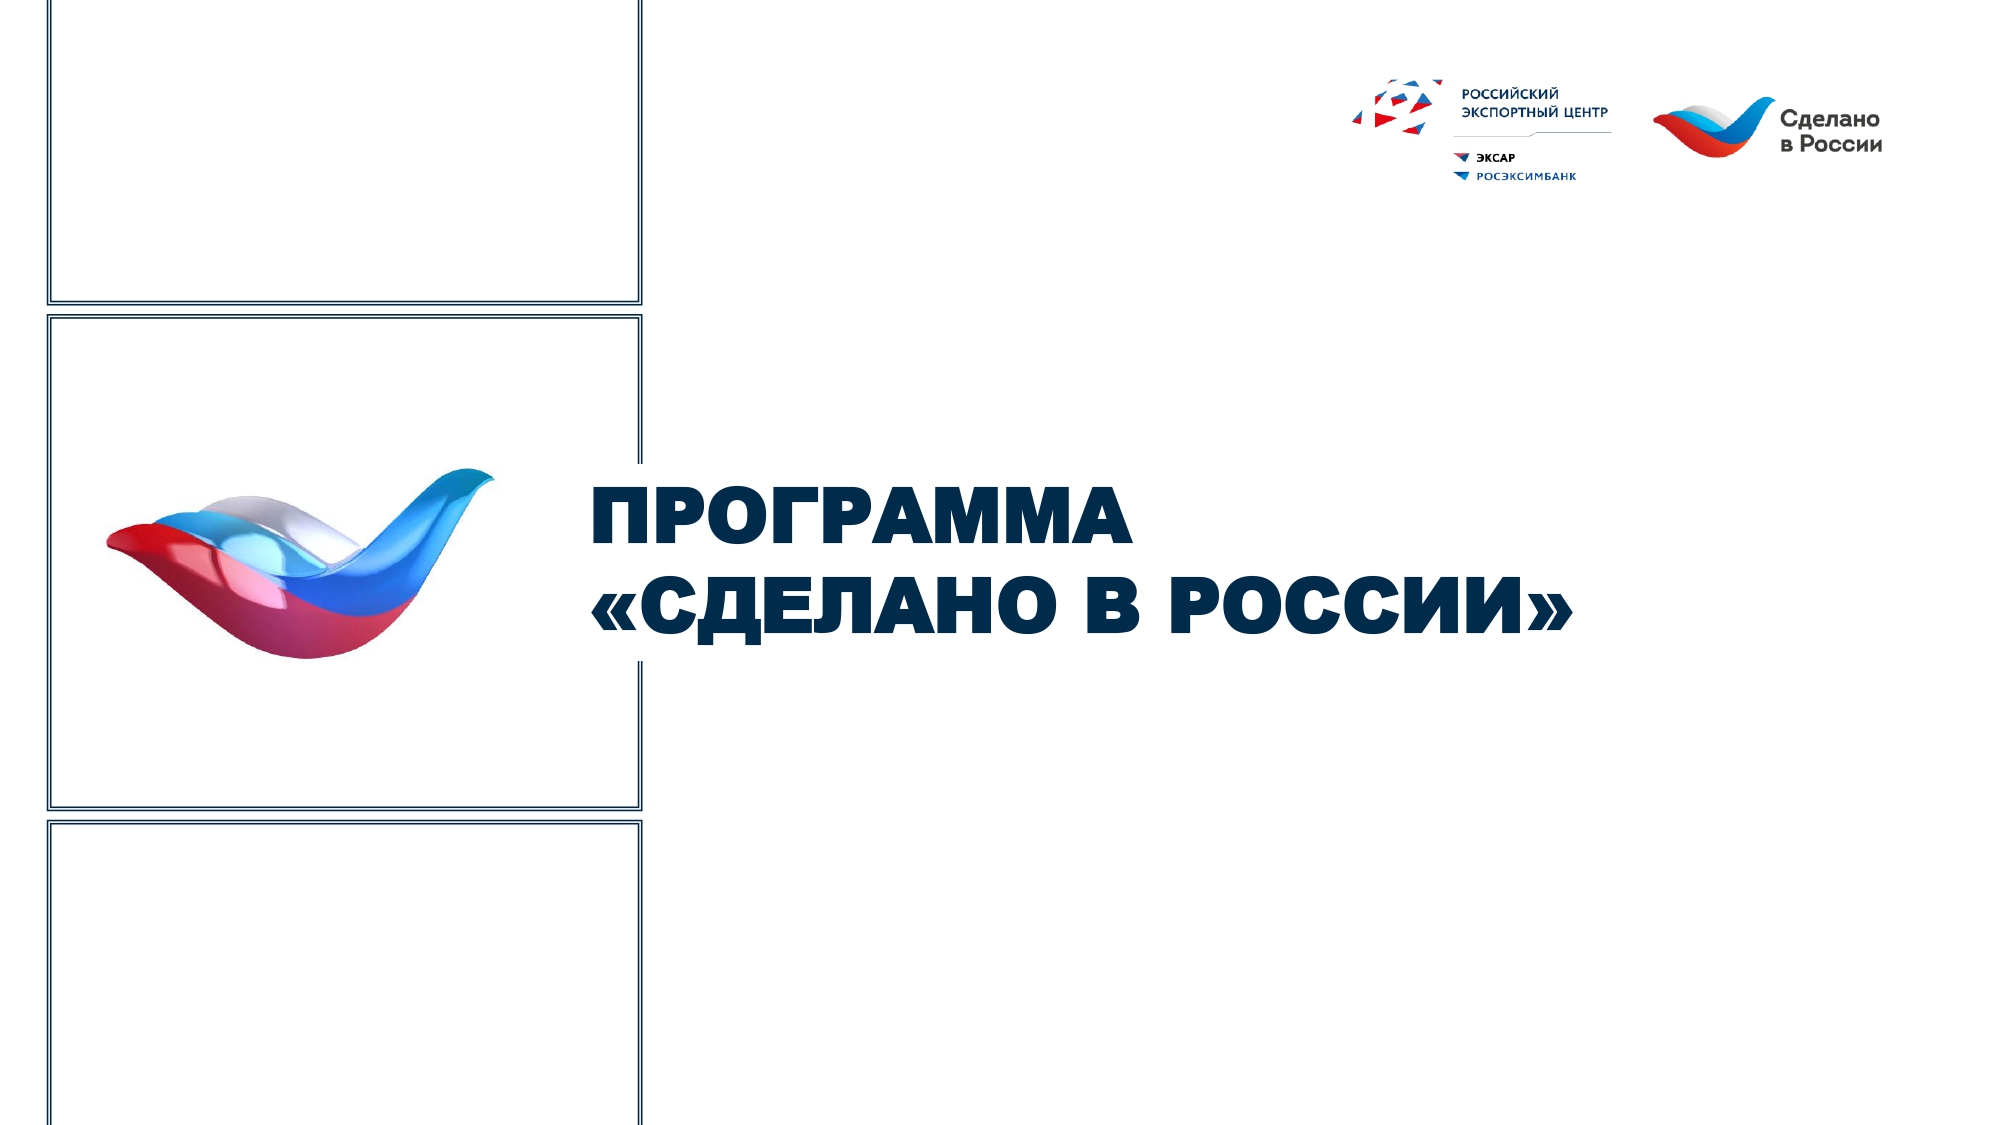 Центр «Мой бизнес» приглашает татарстанских товаропроизводителей присоединиться к Программе «Сделано в России»/ «Made in Russia»